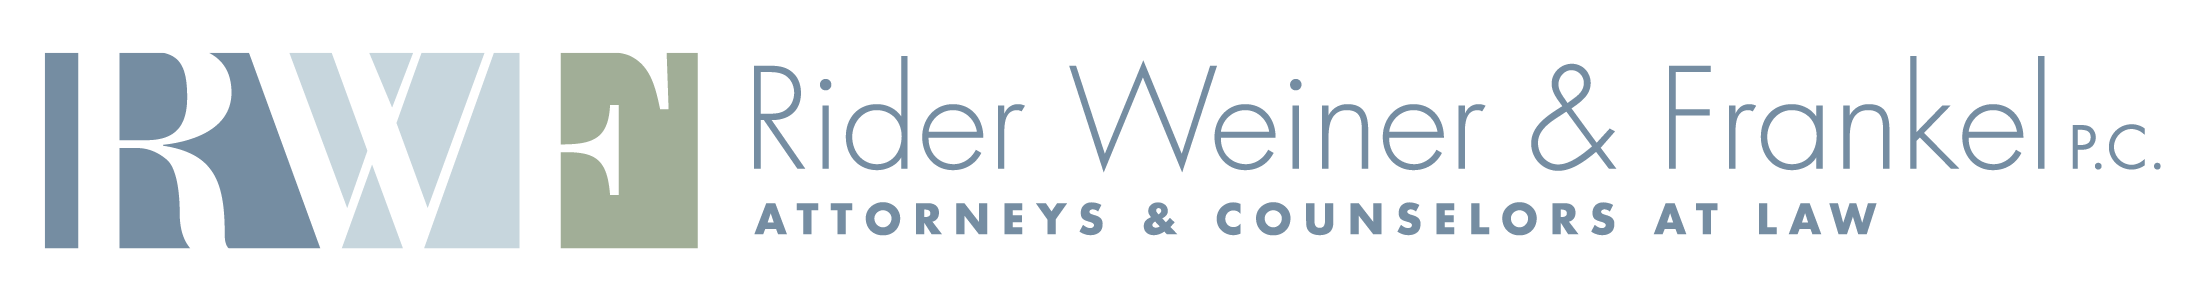 Rider Weiner Frankel logo